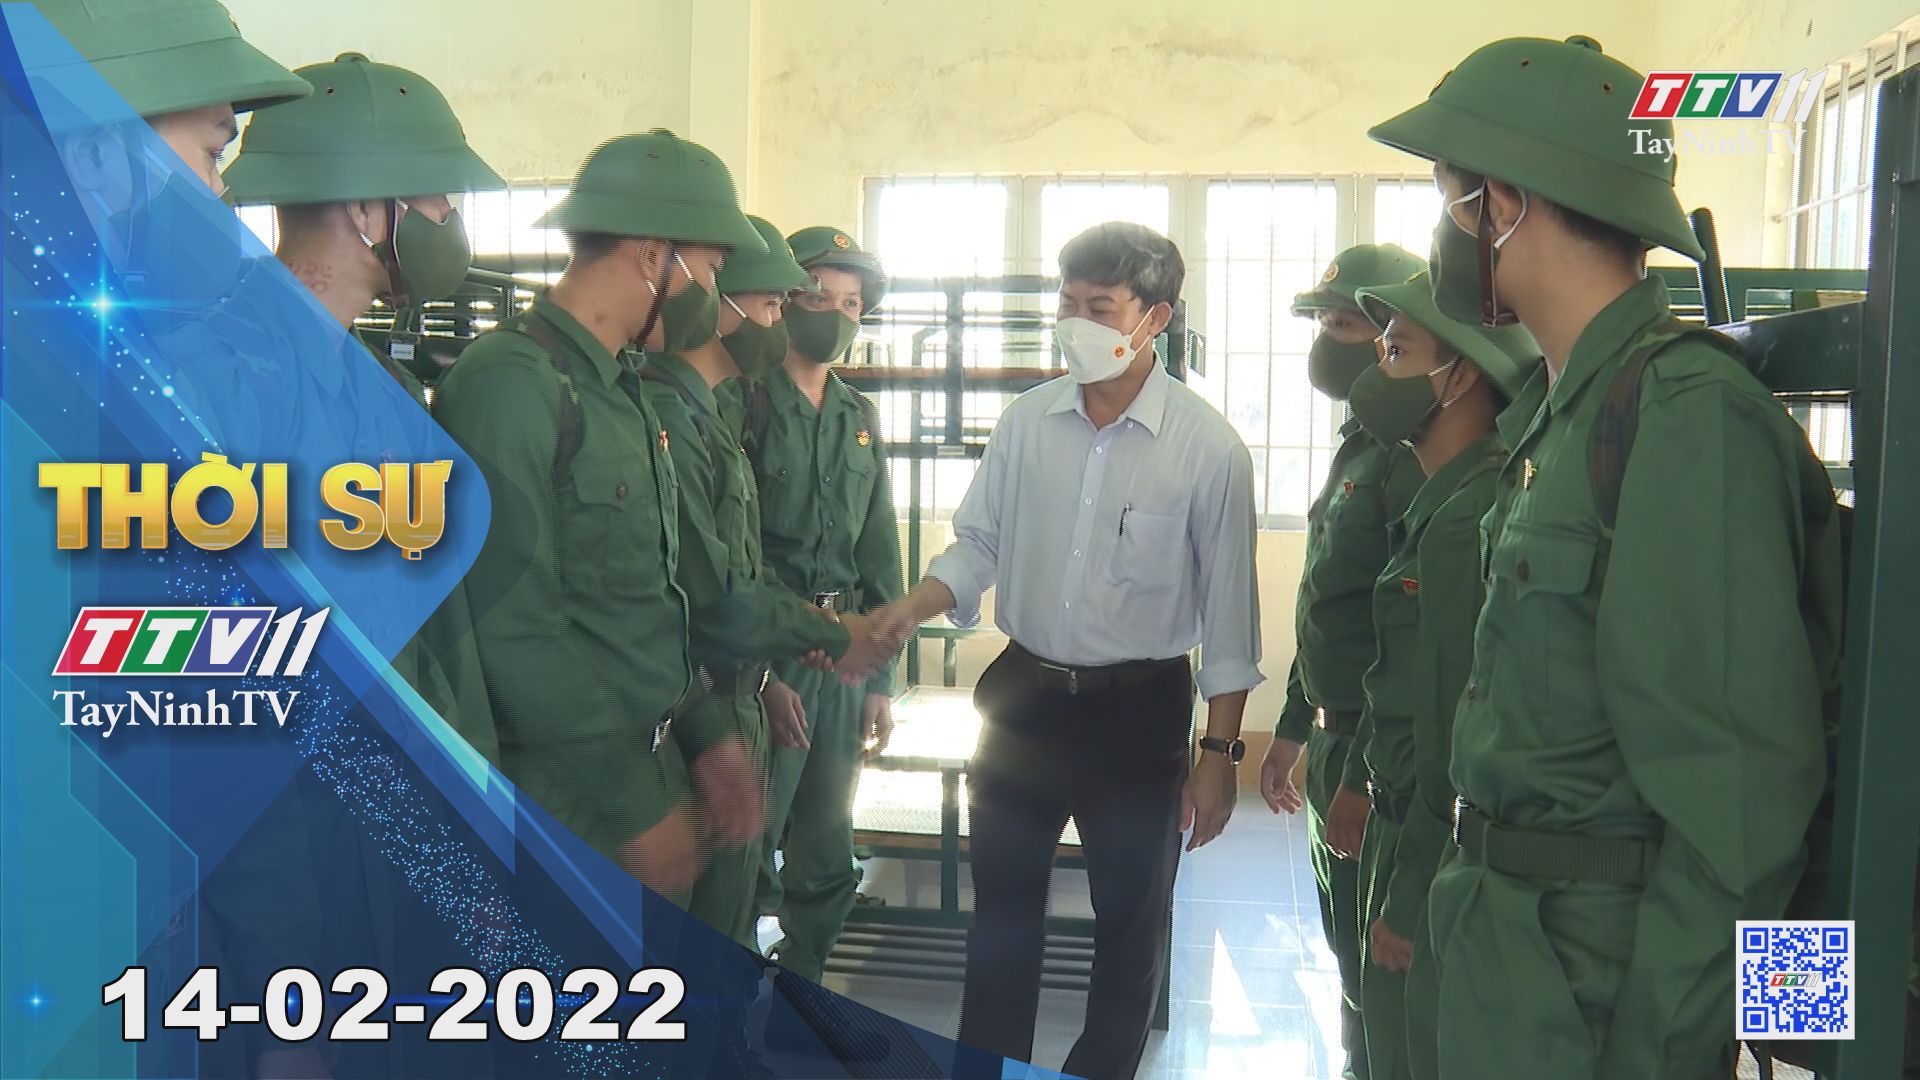 Thời sự Tây Ninh 14-02-2022 | Tin tức hôm nay | TayNinhTV